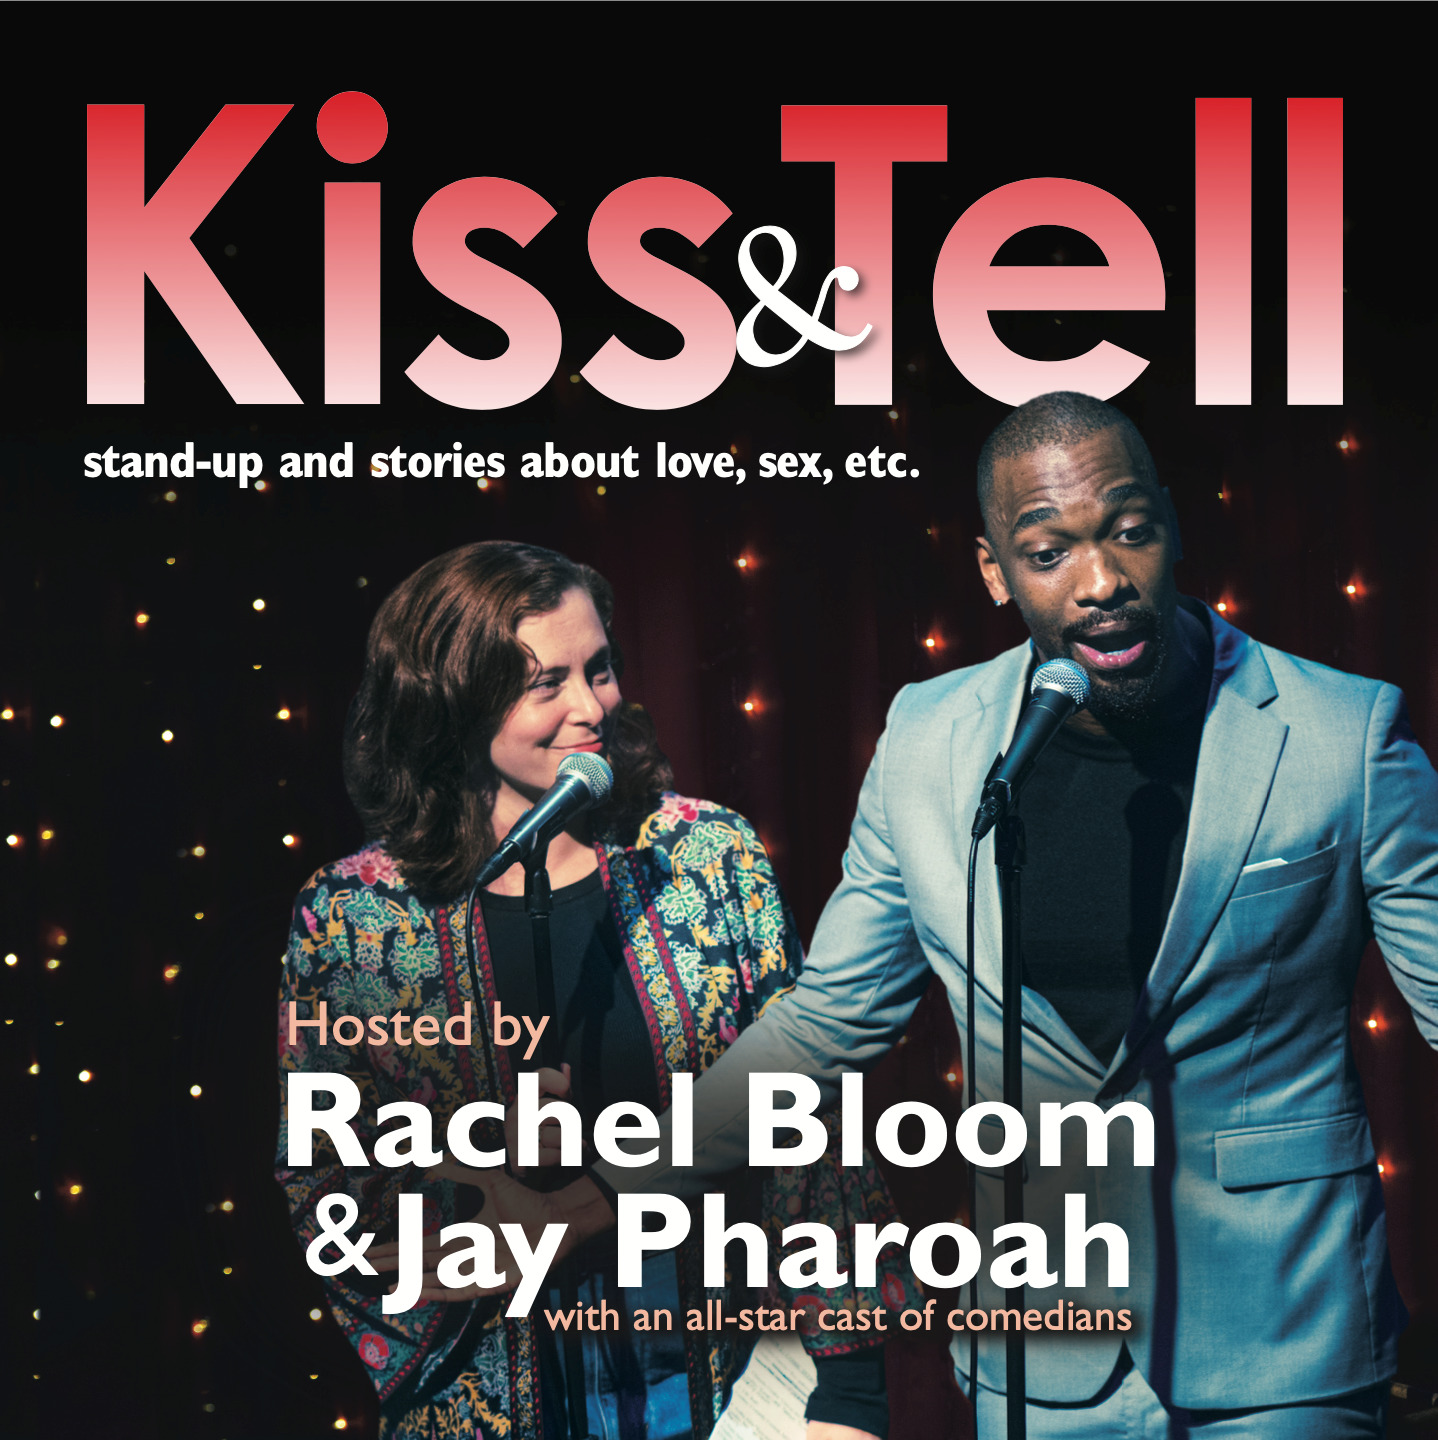 Jay Pharoah & Rachel Bloom Host “Kiss & Tell” Audiobook